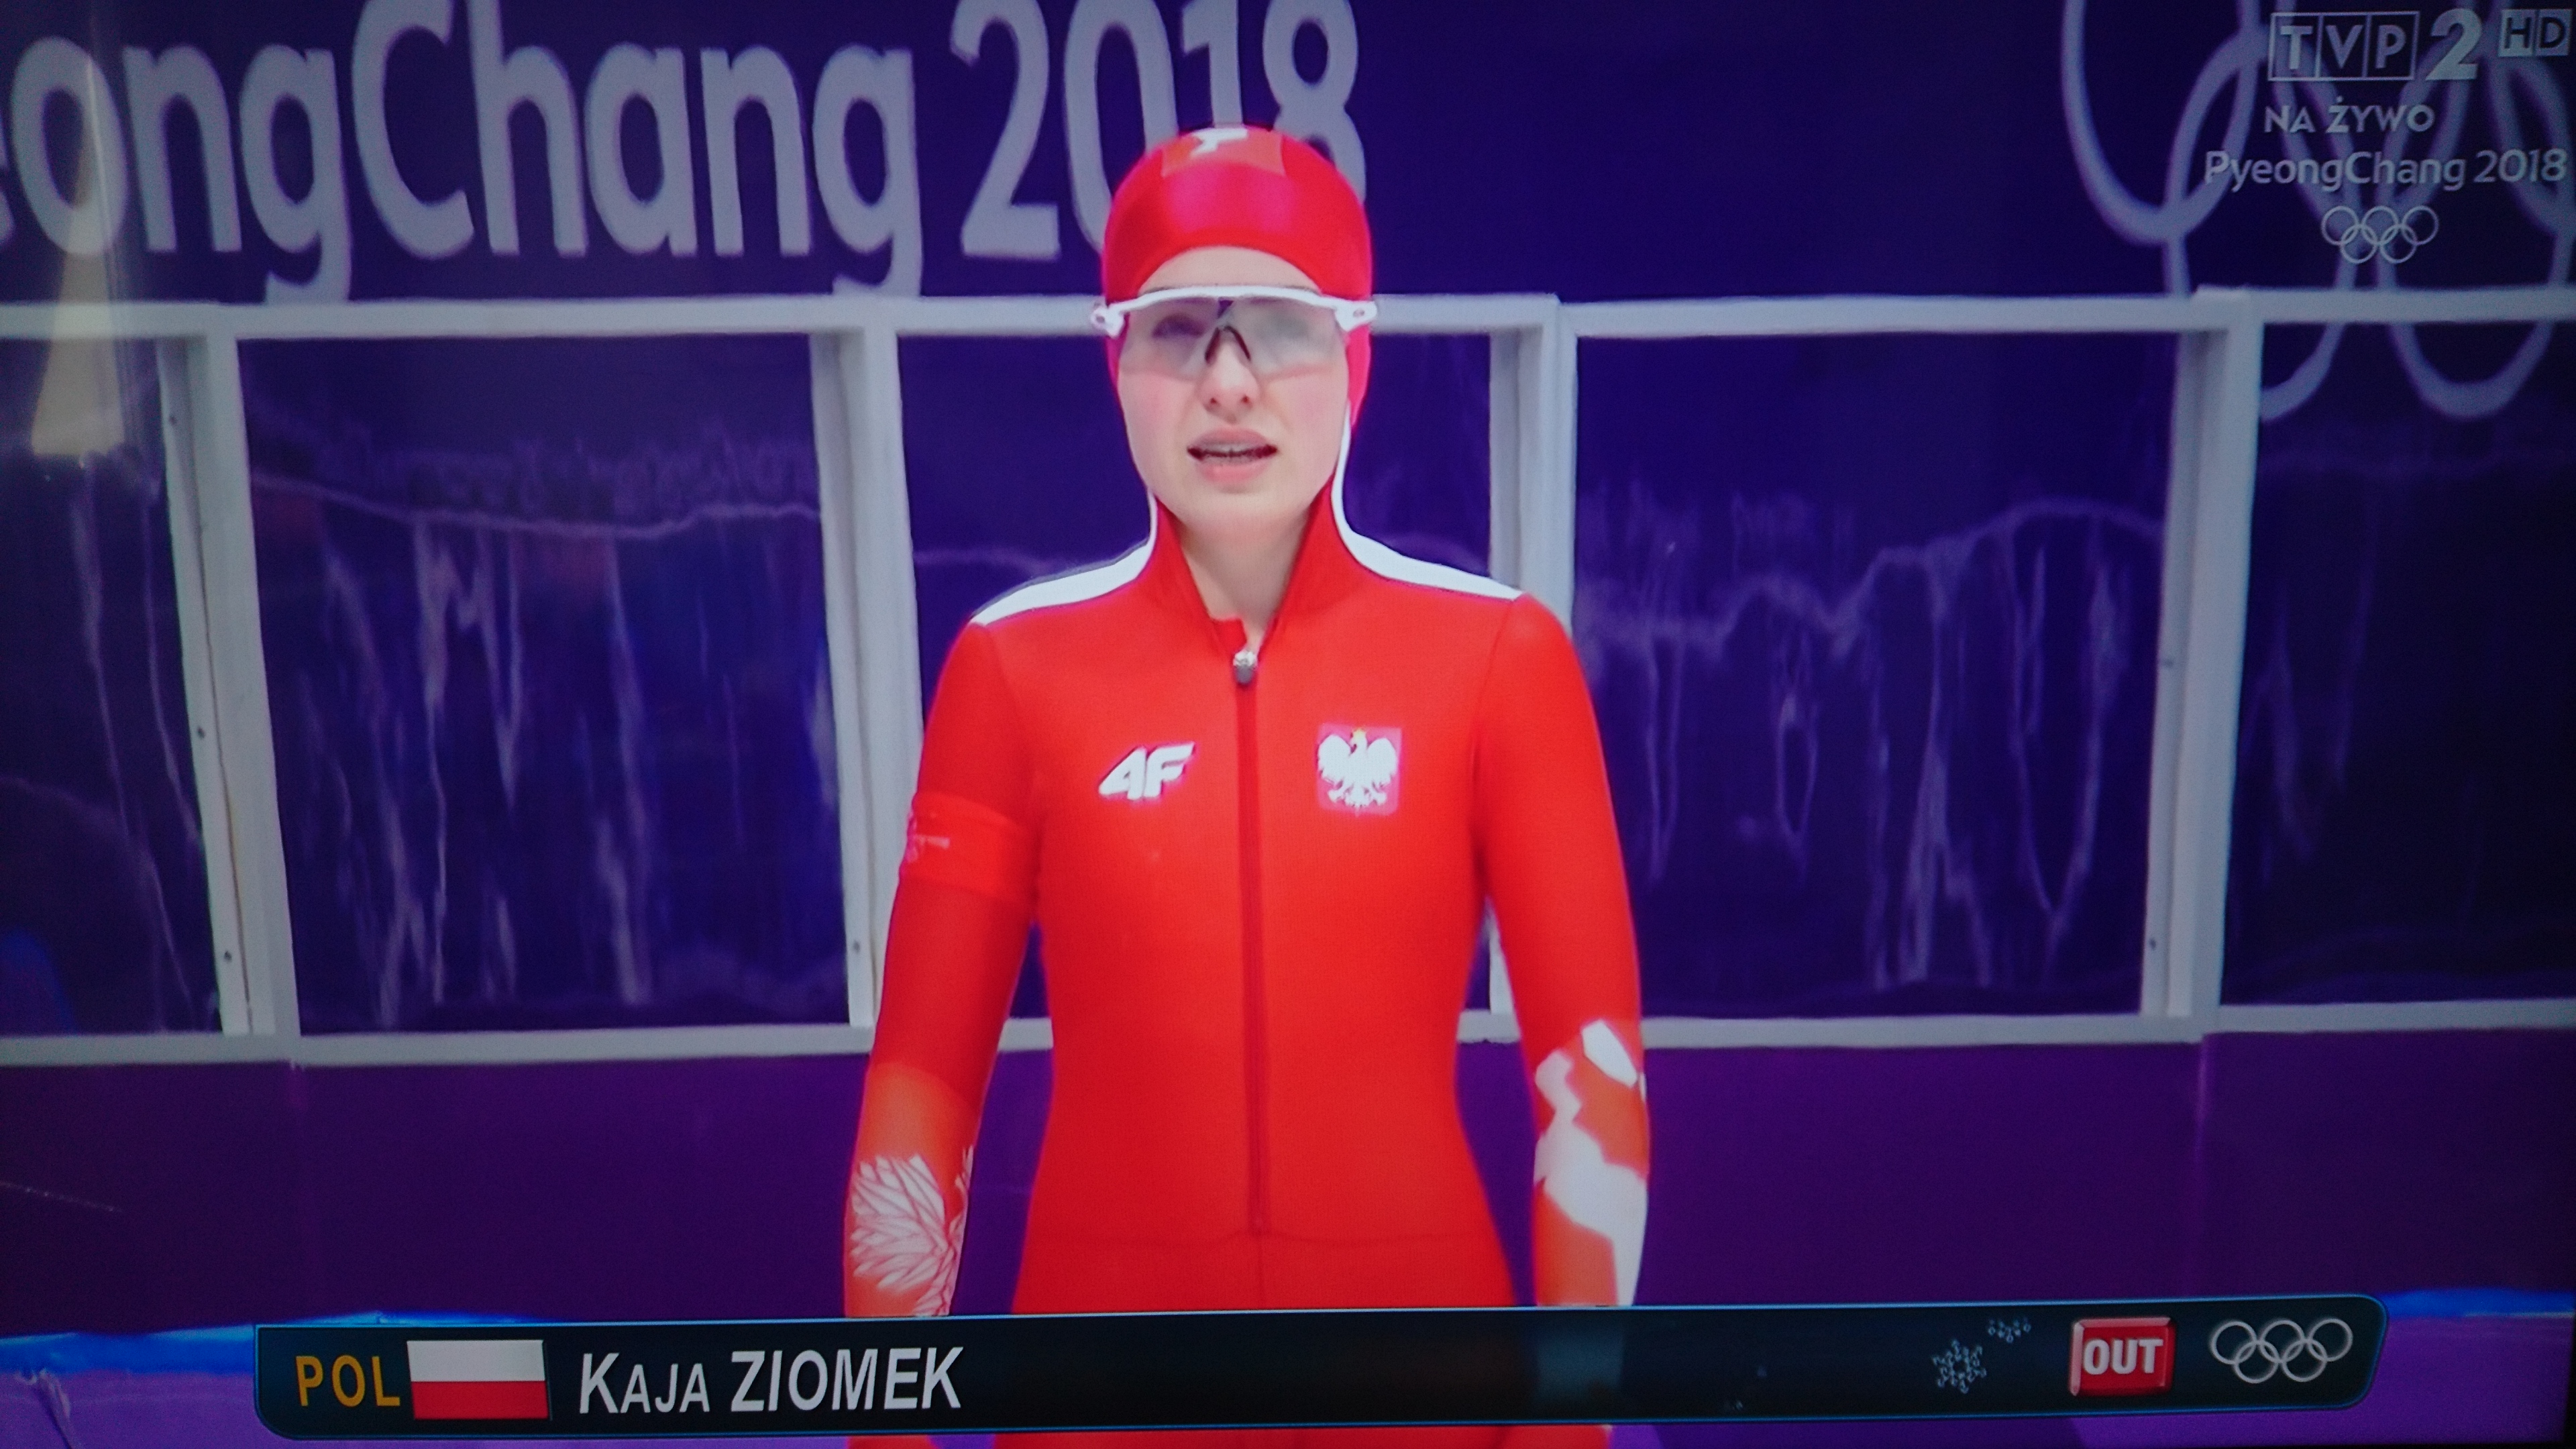 Kaja Ziomek 25. w debiucie olimpijskim